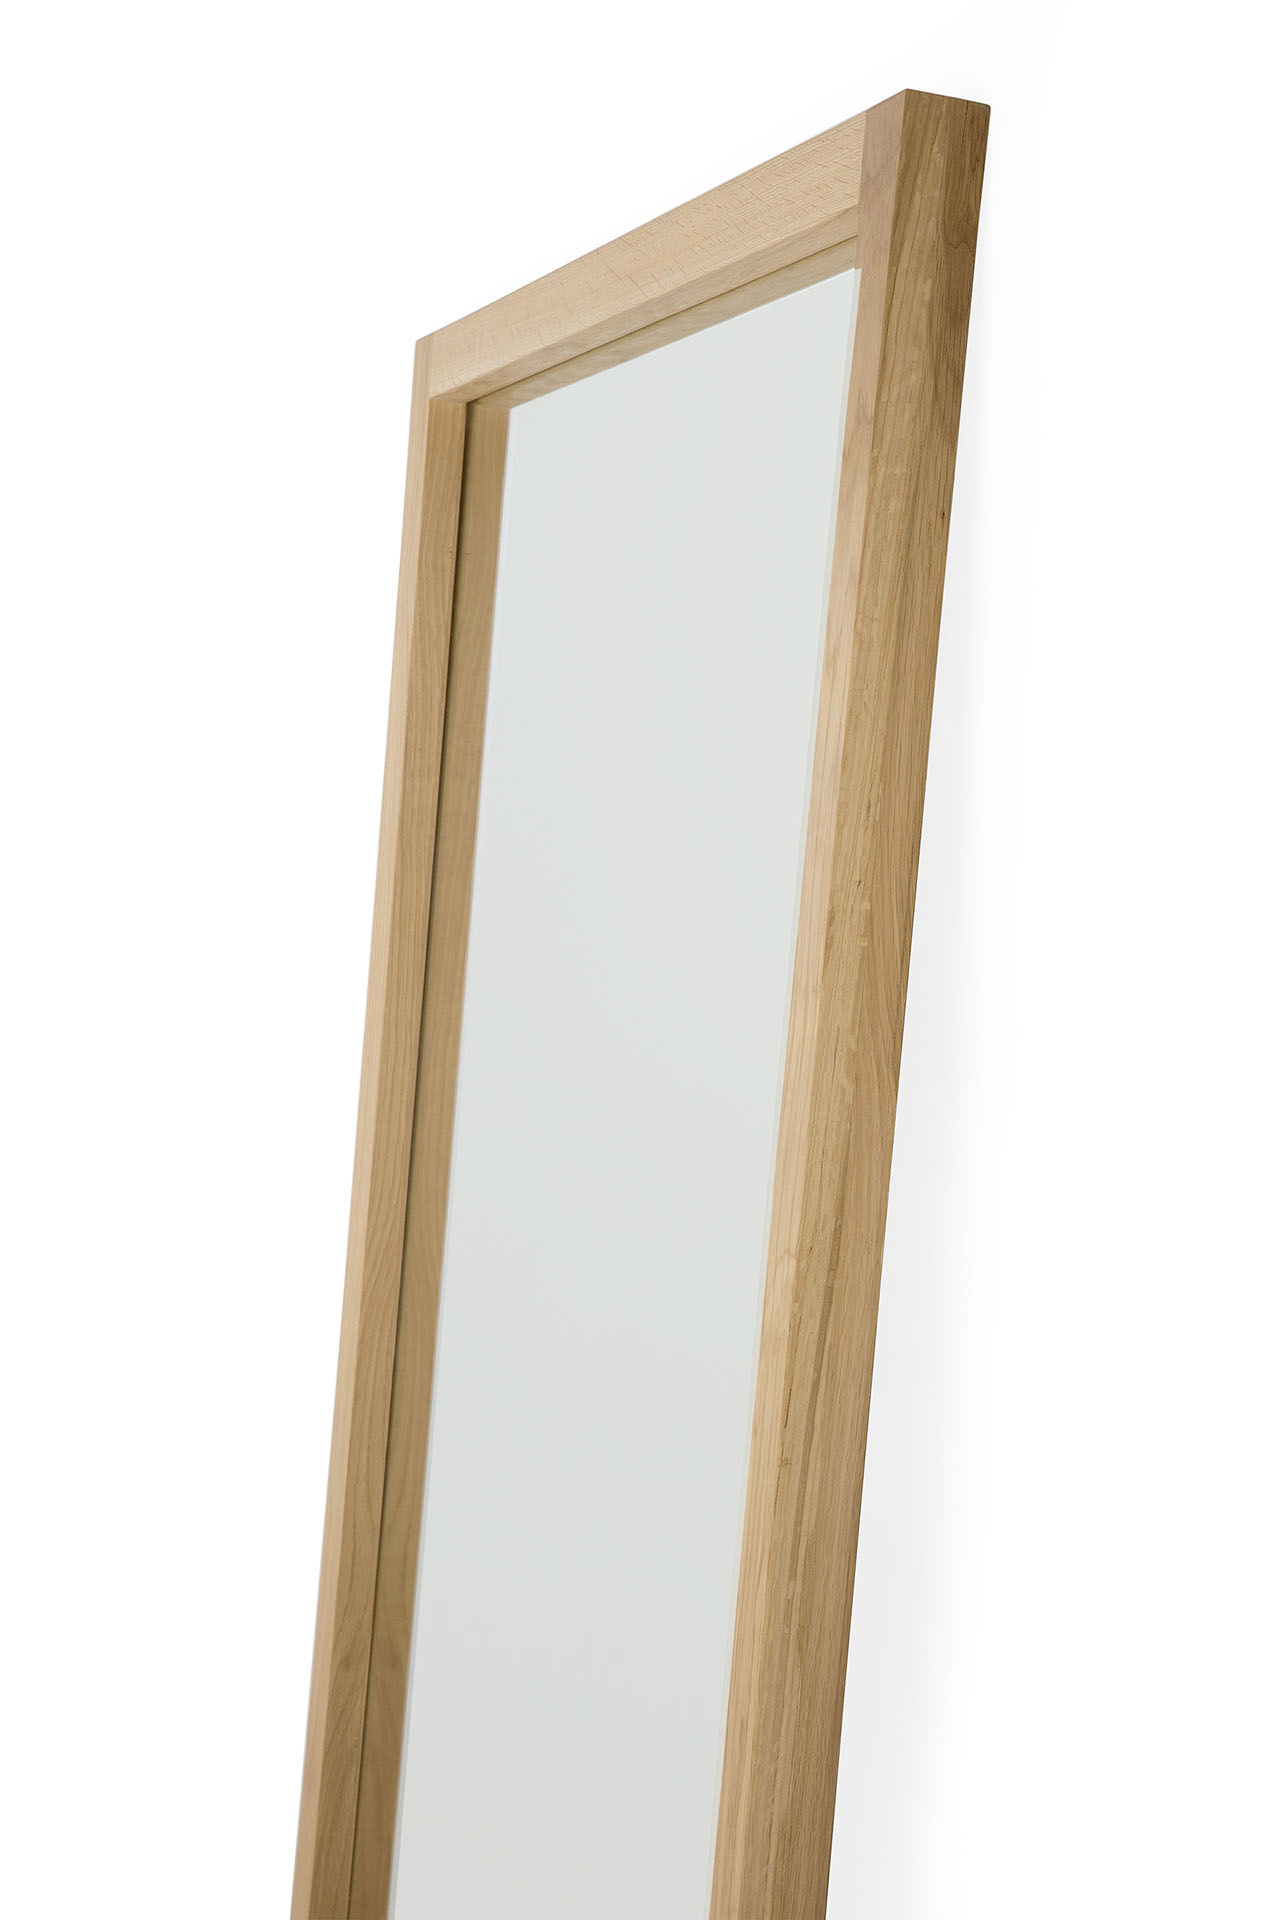 Ethnicraft - Light Frame vloerspiegel eiken frame (90 x 5 x 200 cm)